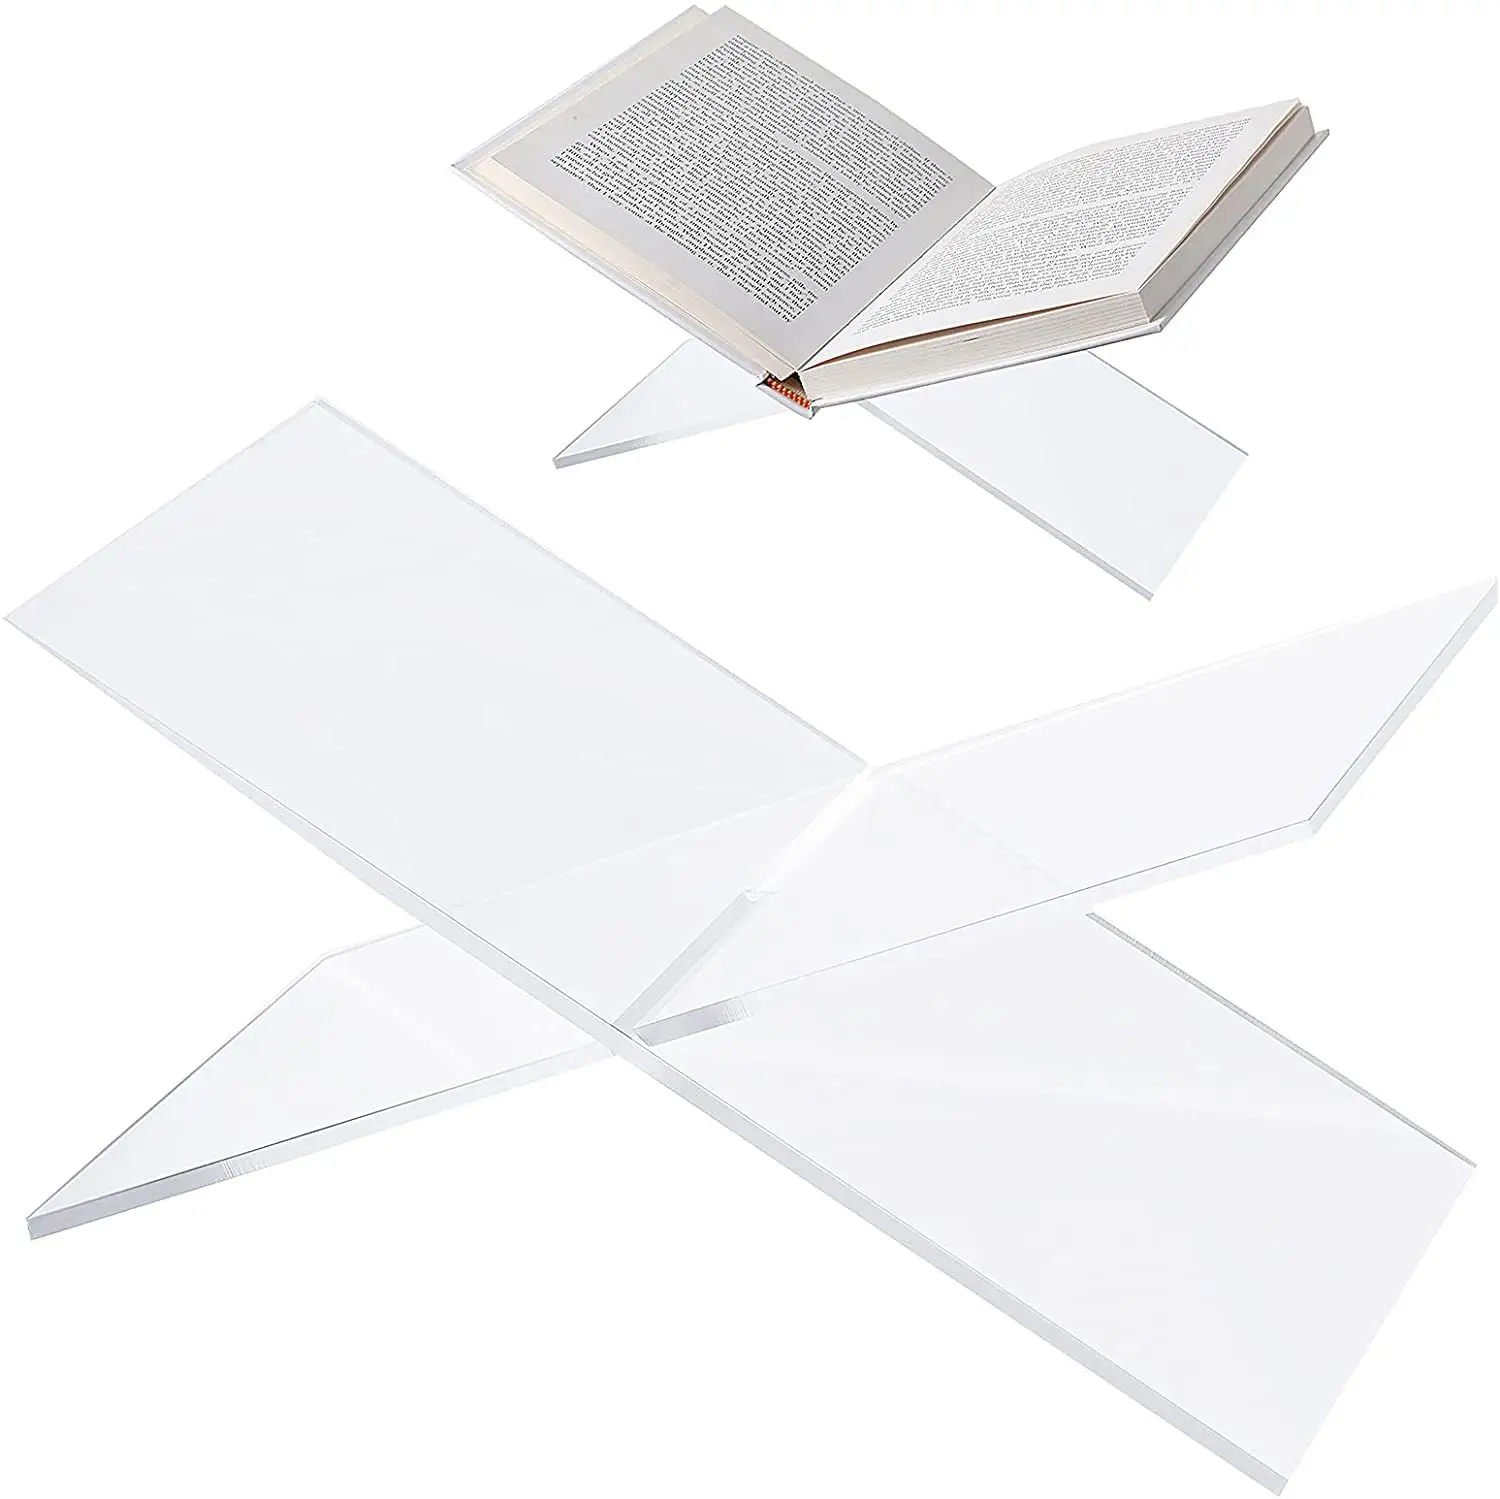 O mais popular Cruzadas Estantes Titular Acrílico Book Holder Para Leitura Acrílico Assembleia Book Stand